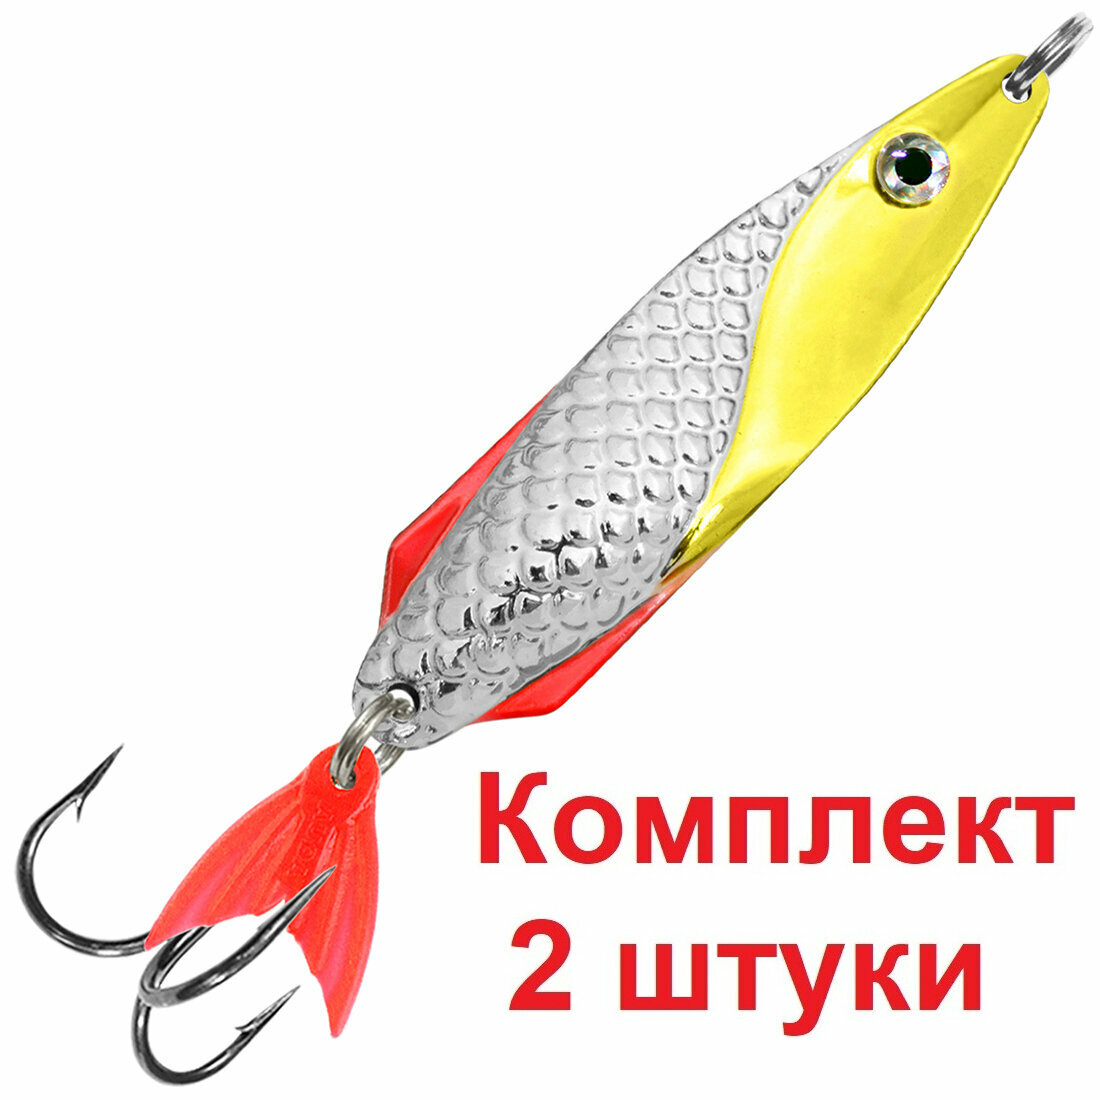 Блесна летняя AQUA для рыбалки финт 34,0g цвет 04 (серебро, желтый флюр), 2 штуки в комплекте